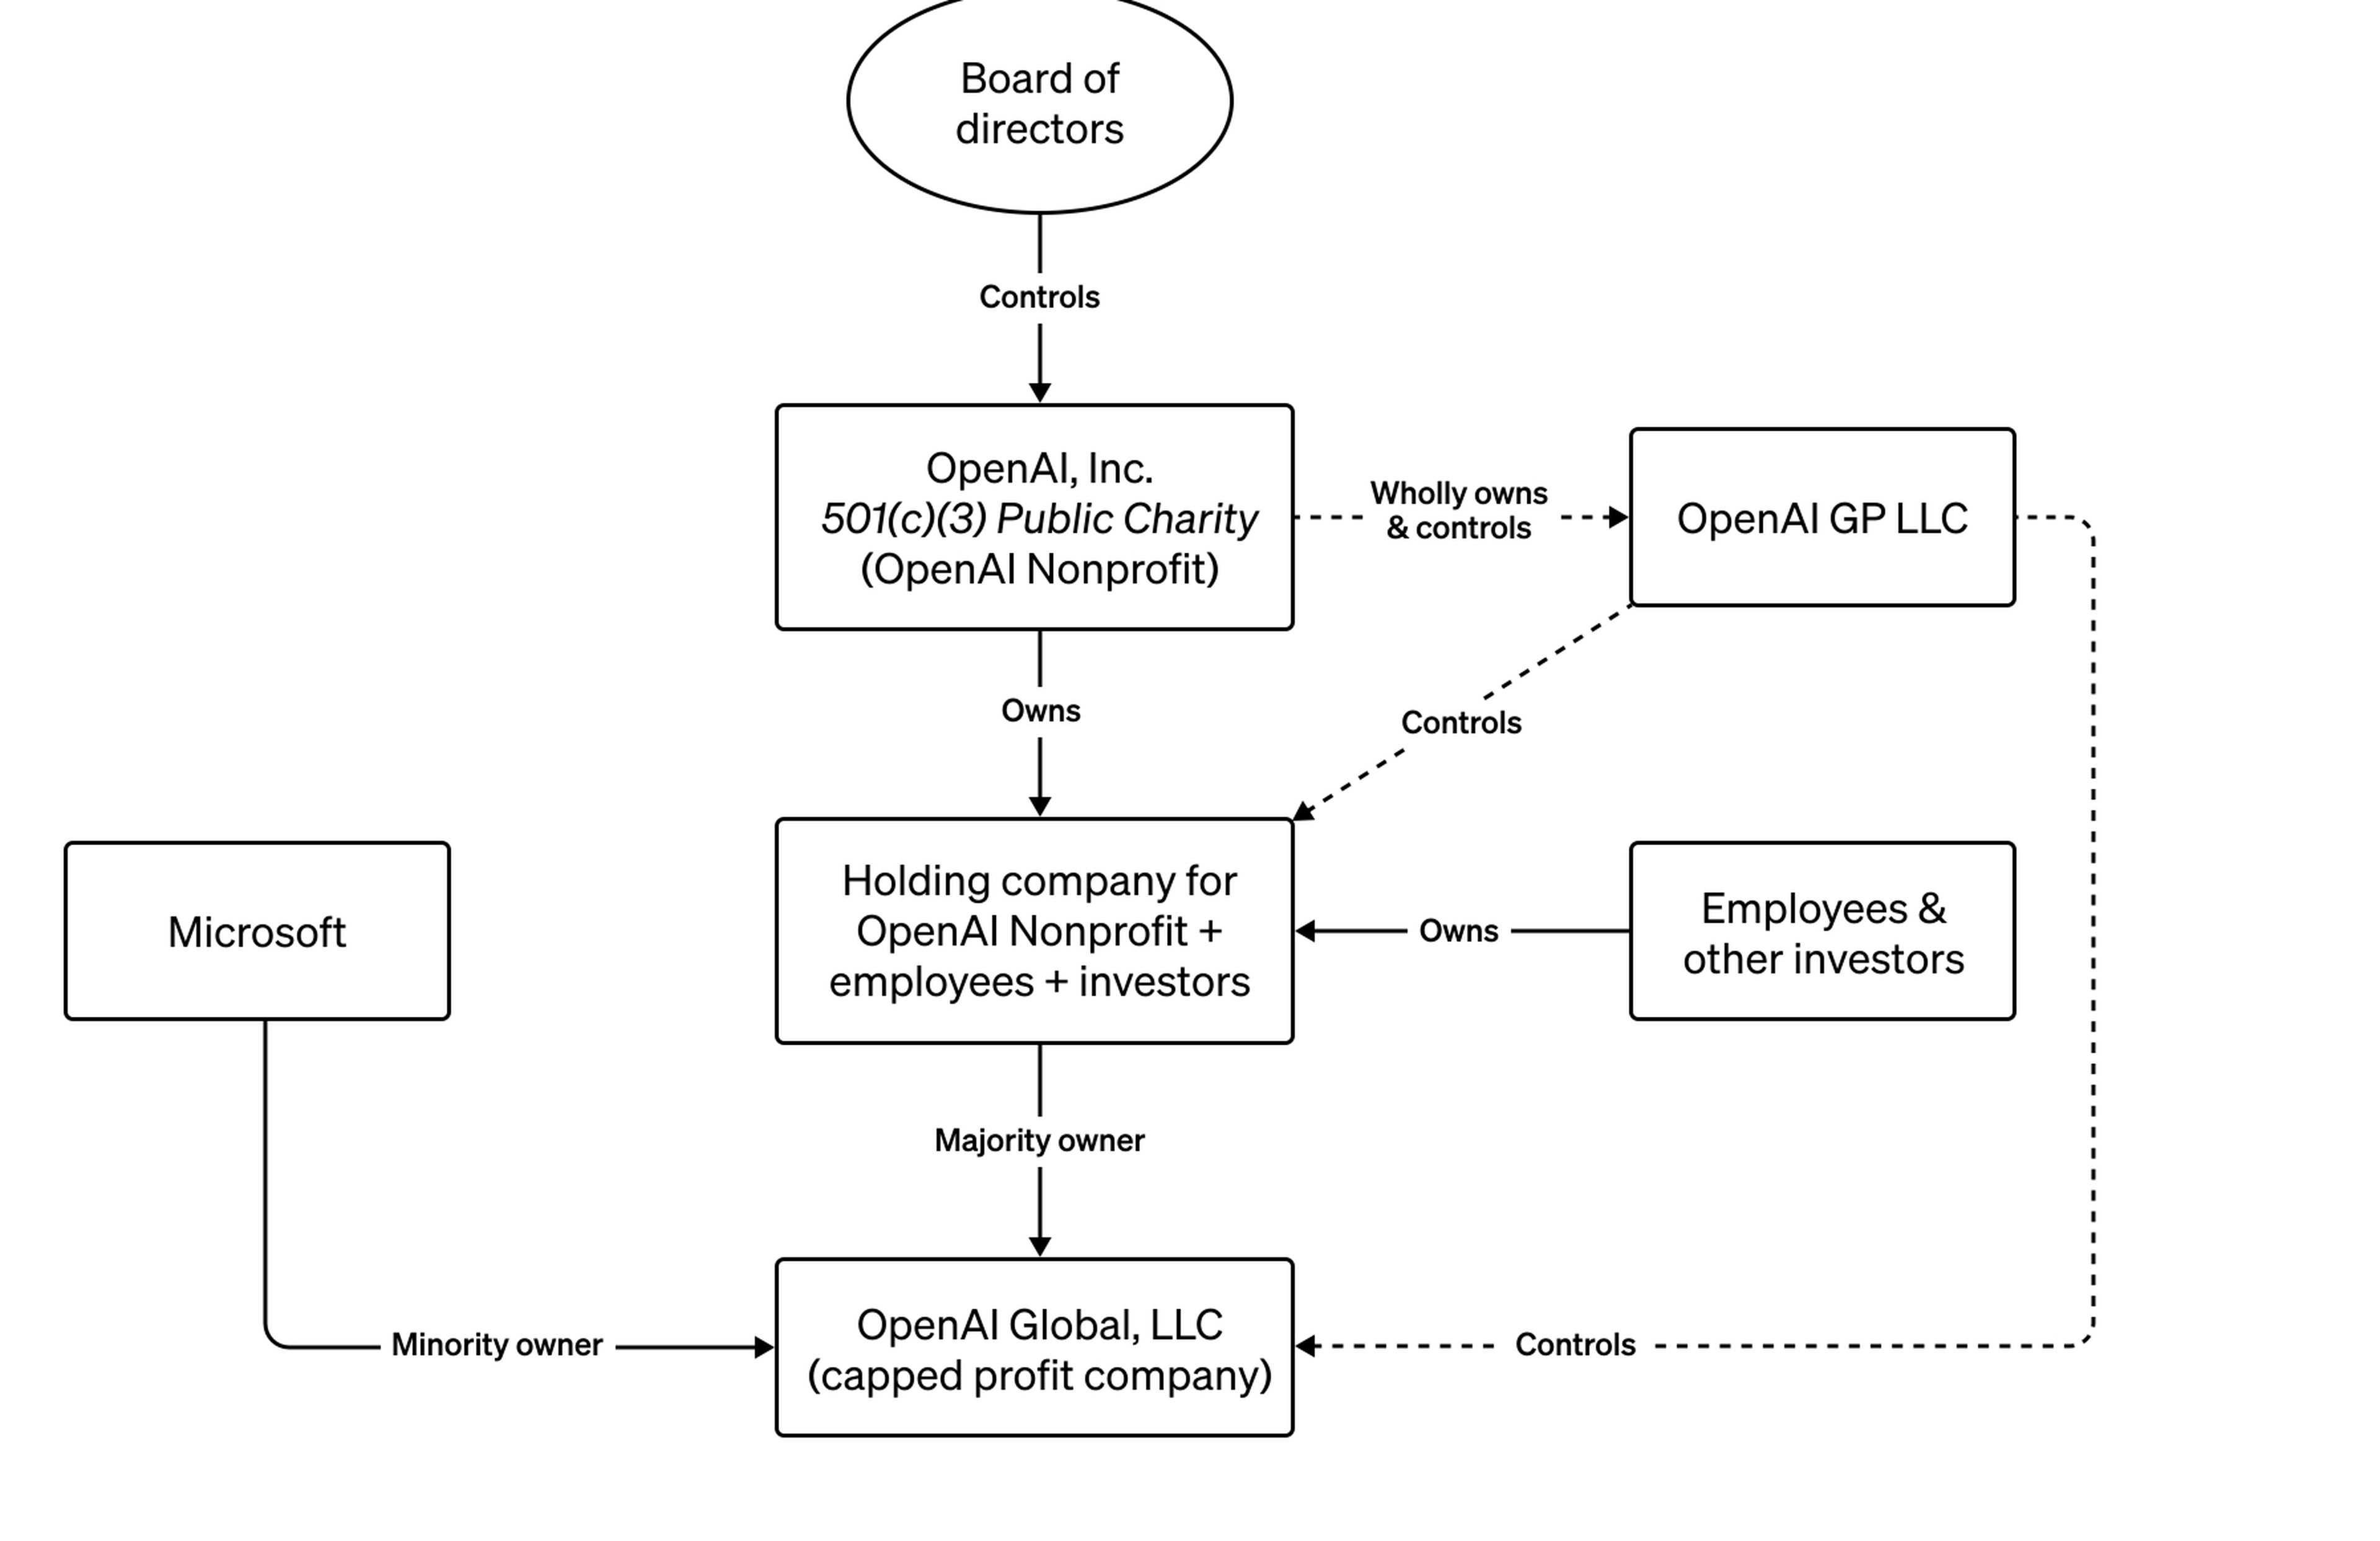 La estructura de OpenAI no se parece a la de una típica startup respaldada por una entidad de capital riesgo.